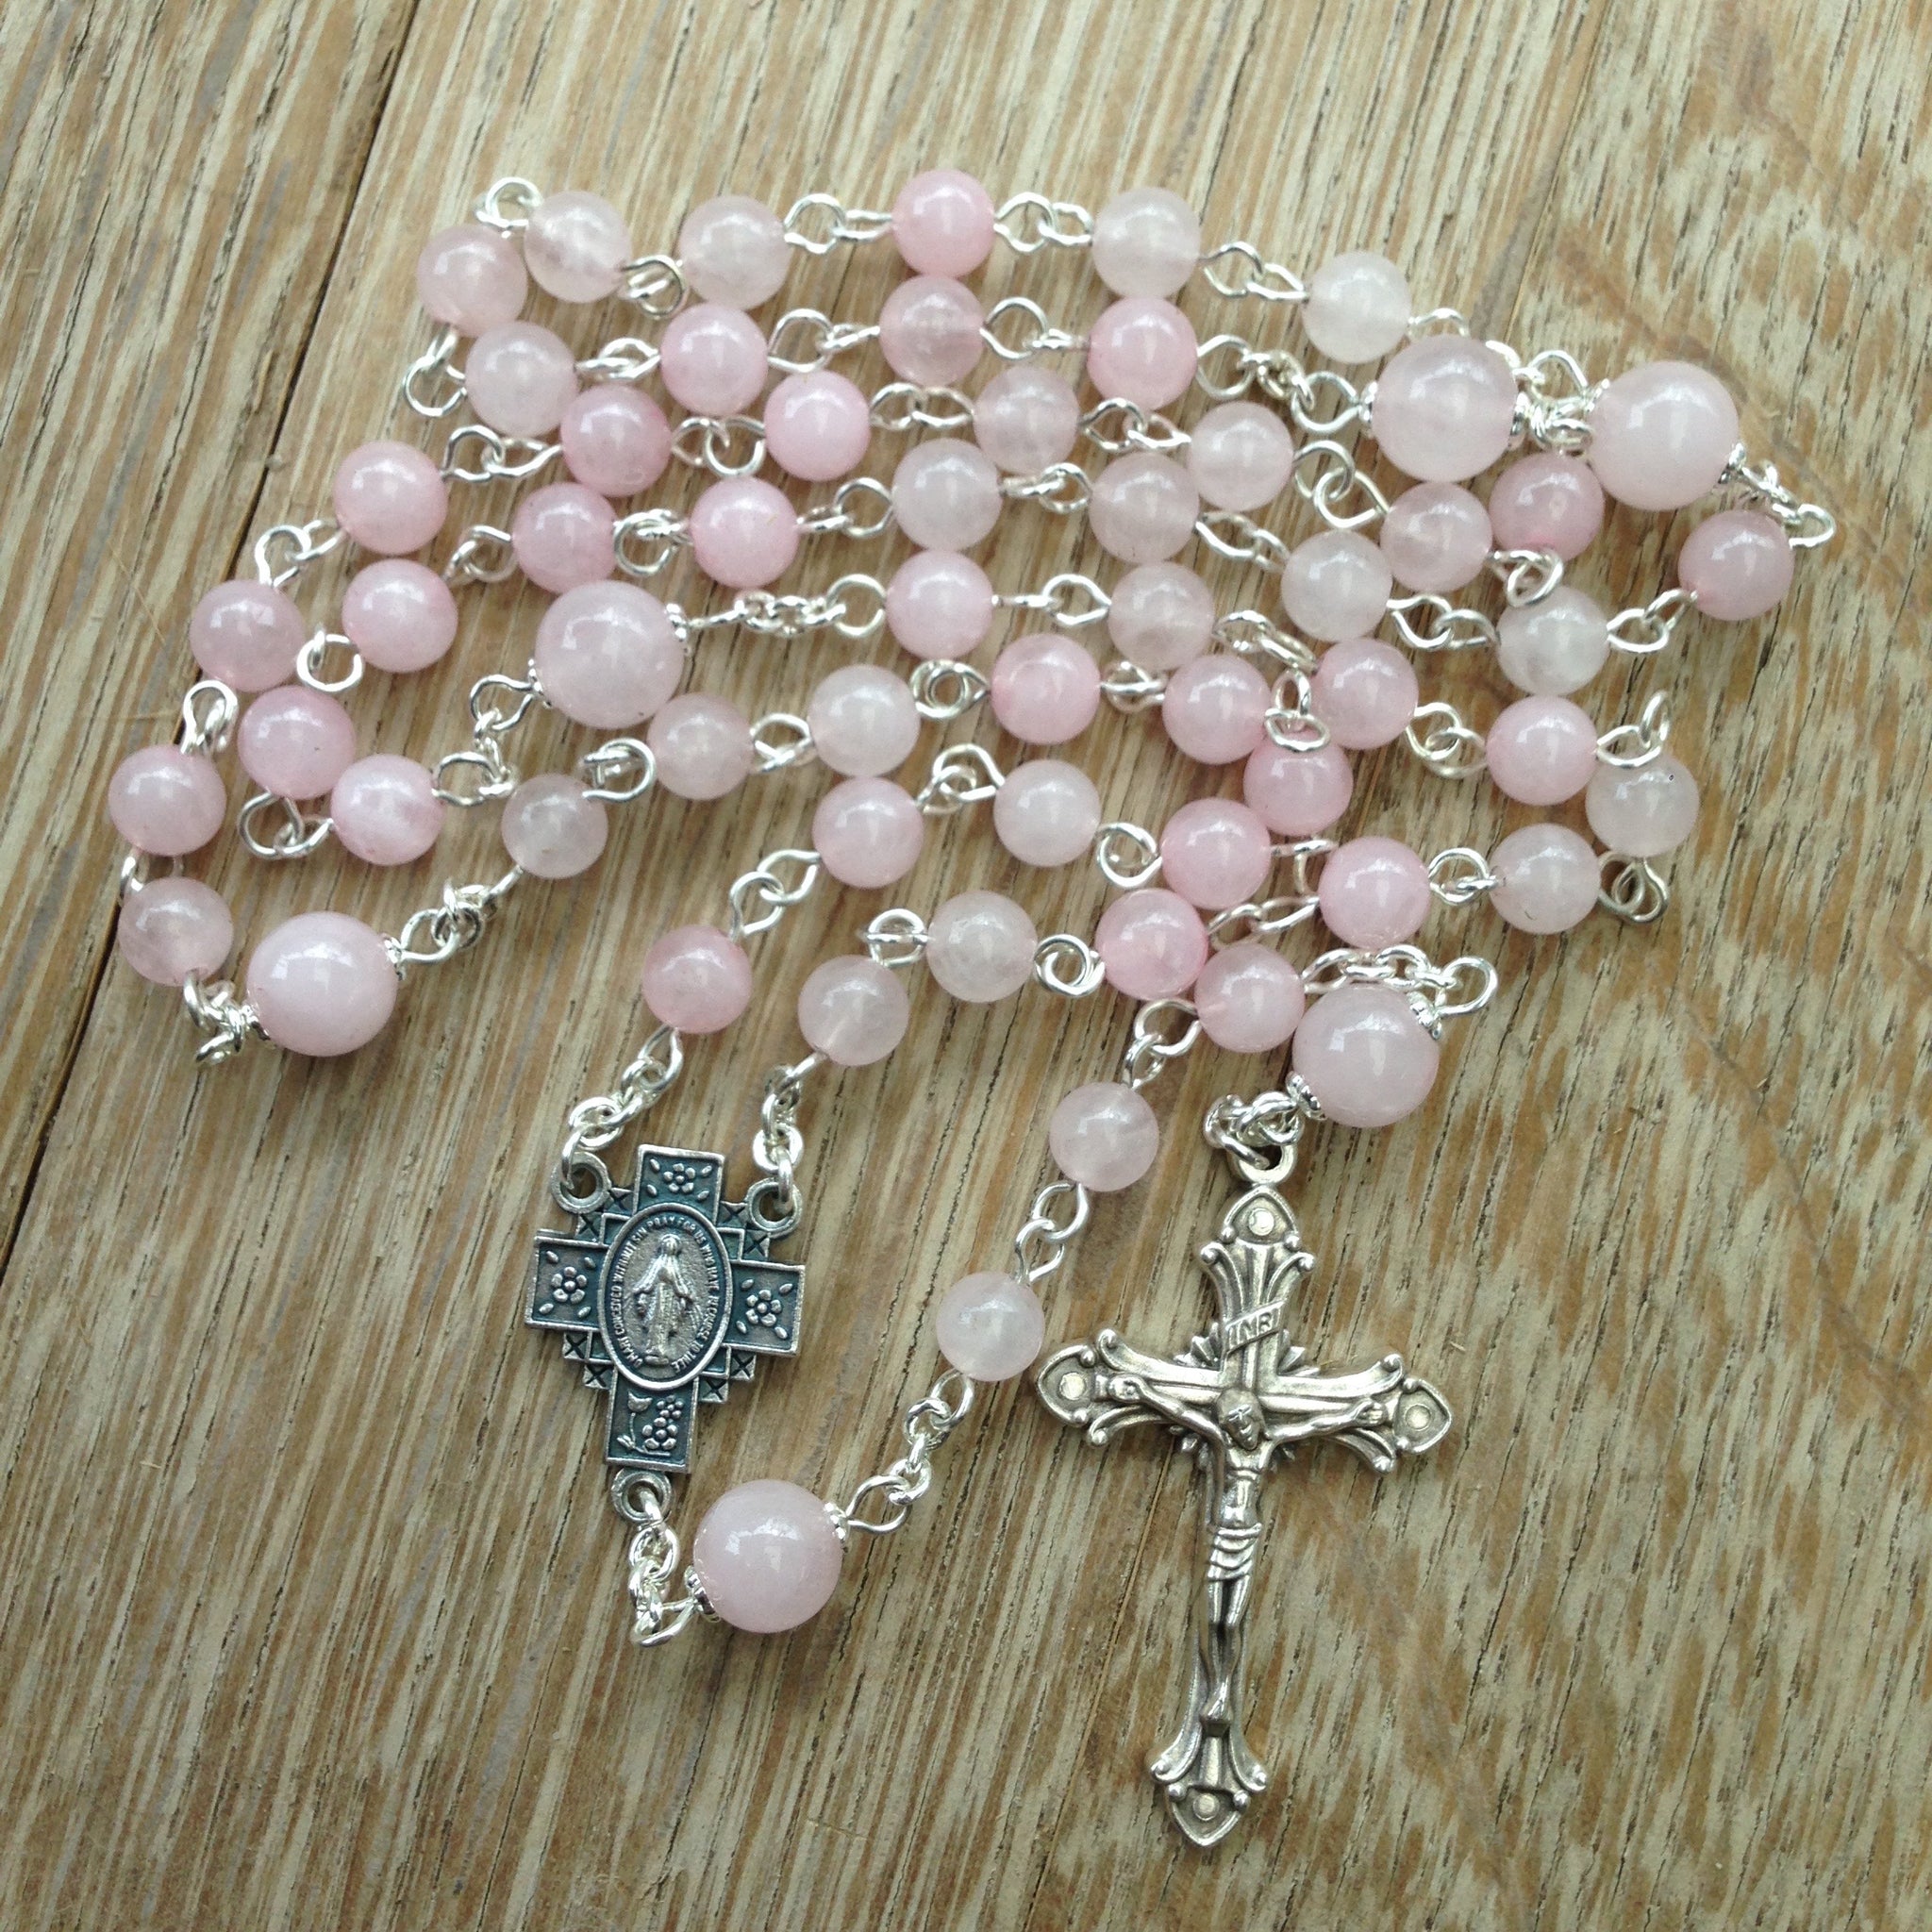 Pink quartz Catholic rosary beads